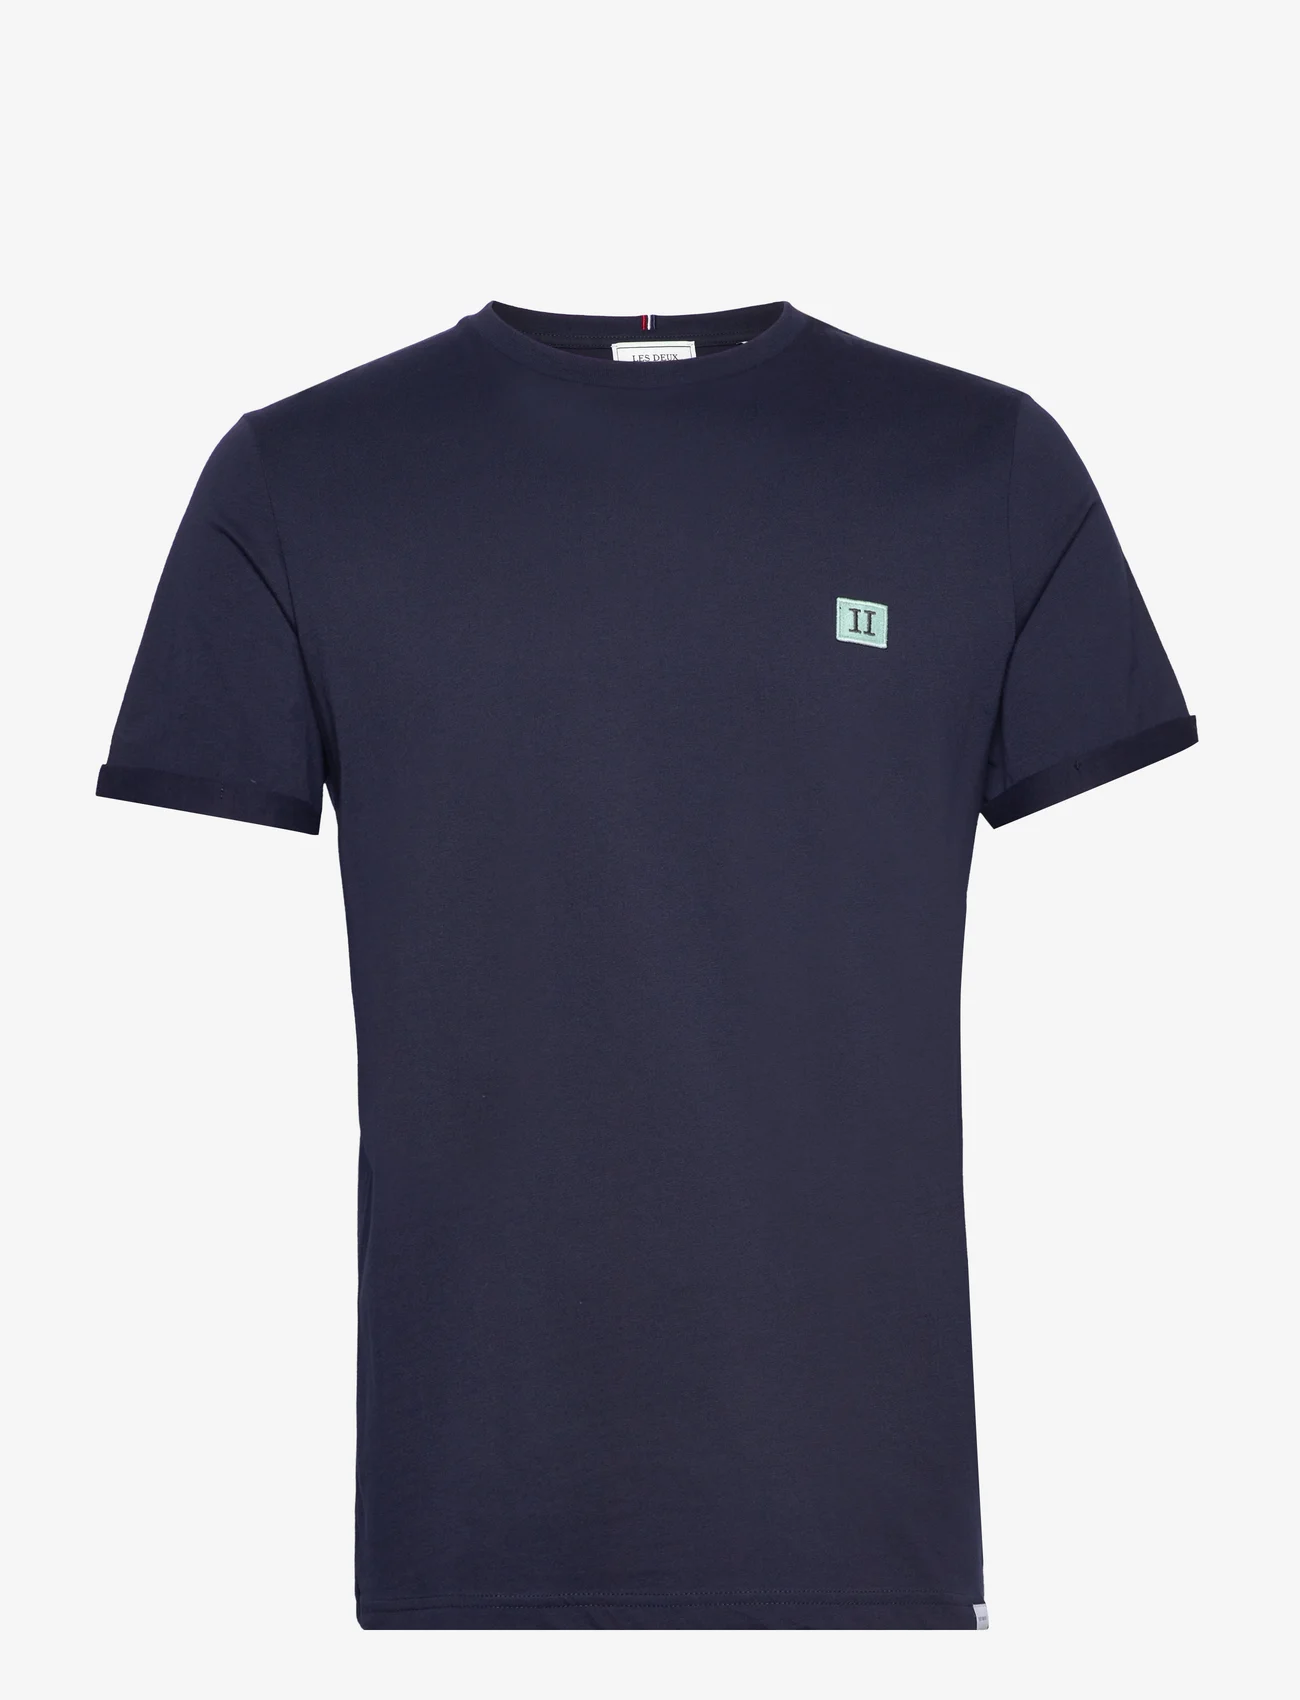 Les Deux - Piece T-Shirt - podstawowe koszulki - dark navy/mint-charcoal - 0